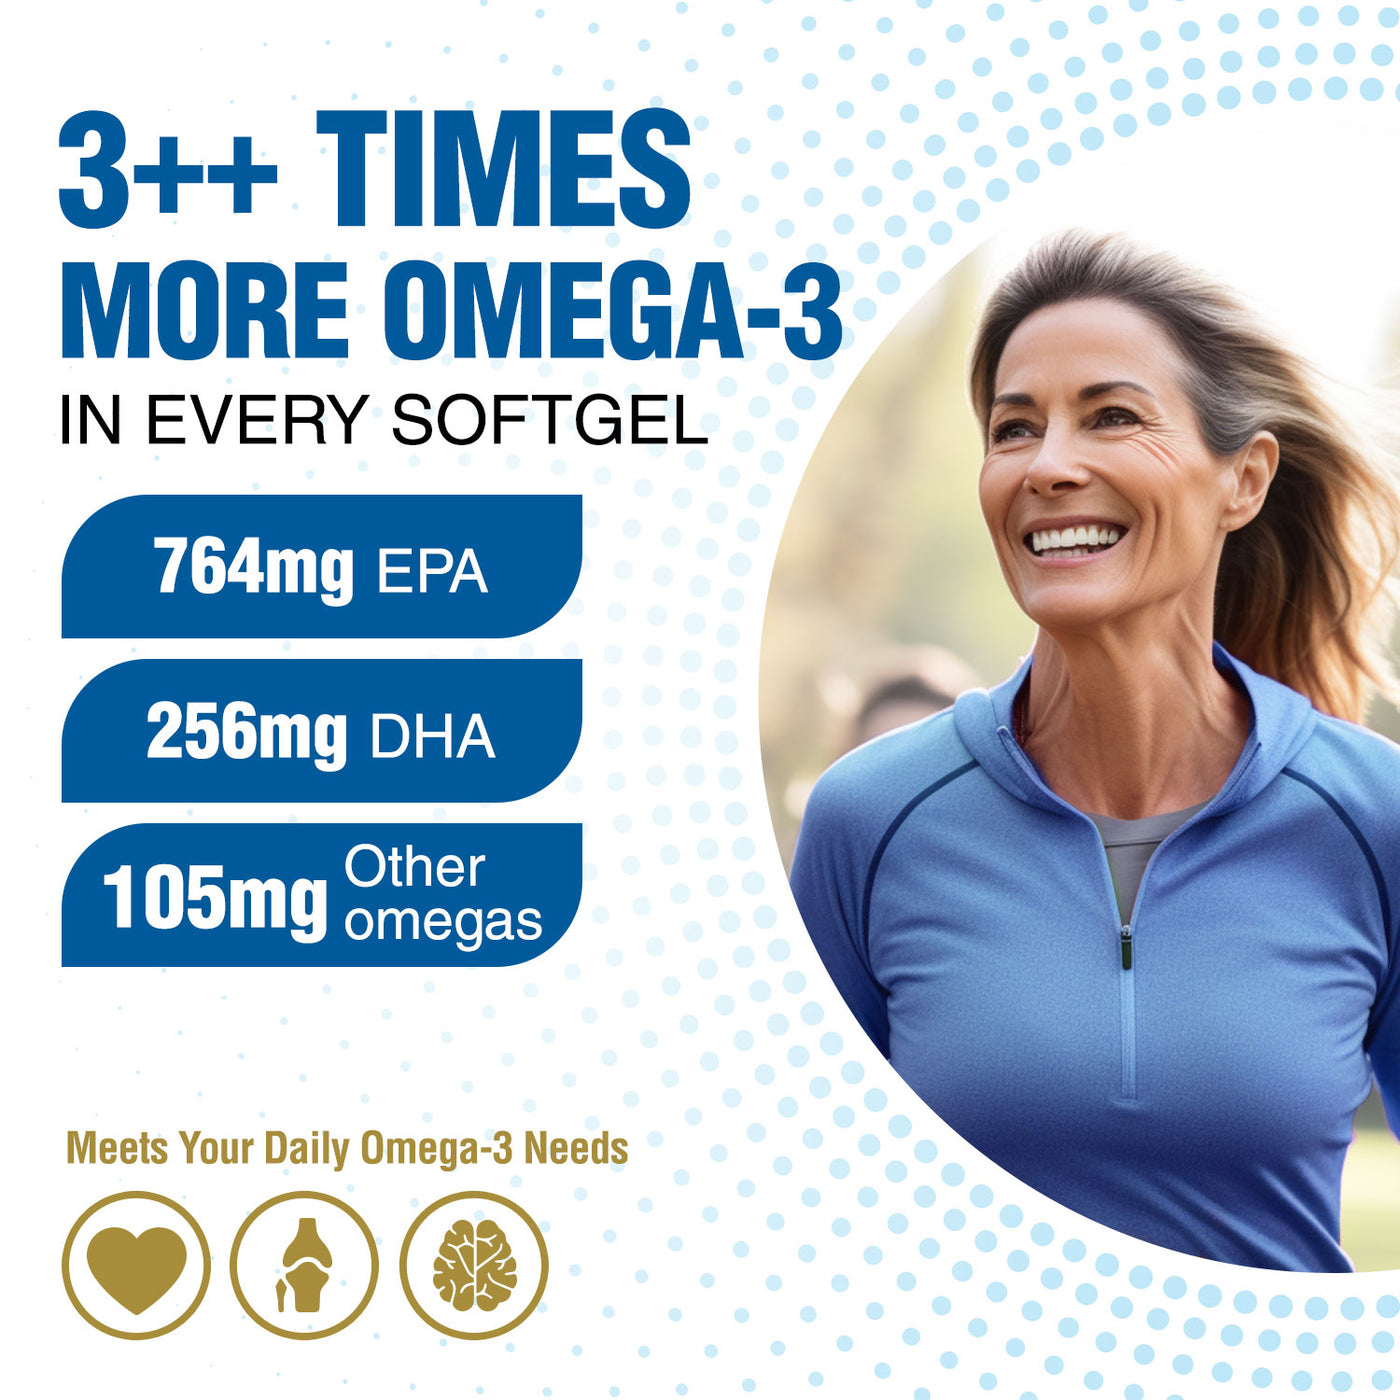 LABO Nutrition OmaxPure Omega 3 Fish Oil, 1125mg Omega-3, Pharmaceutical Grade, Better Absorbed rTG Form, for Heart, Joint, Brain & Immune Health - Lifestream Group US